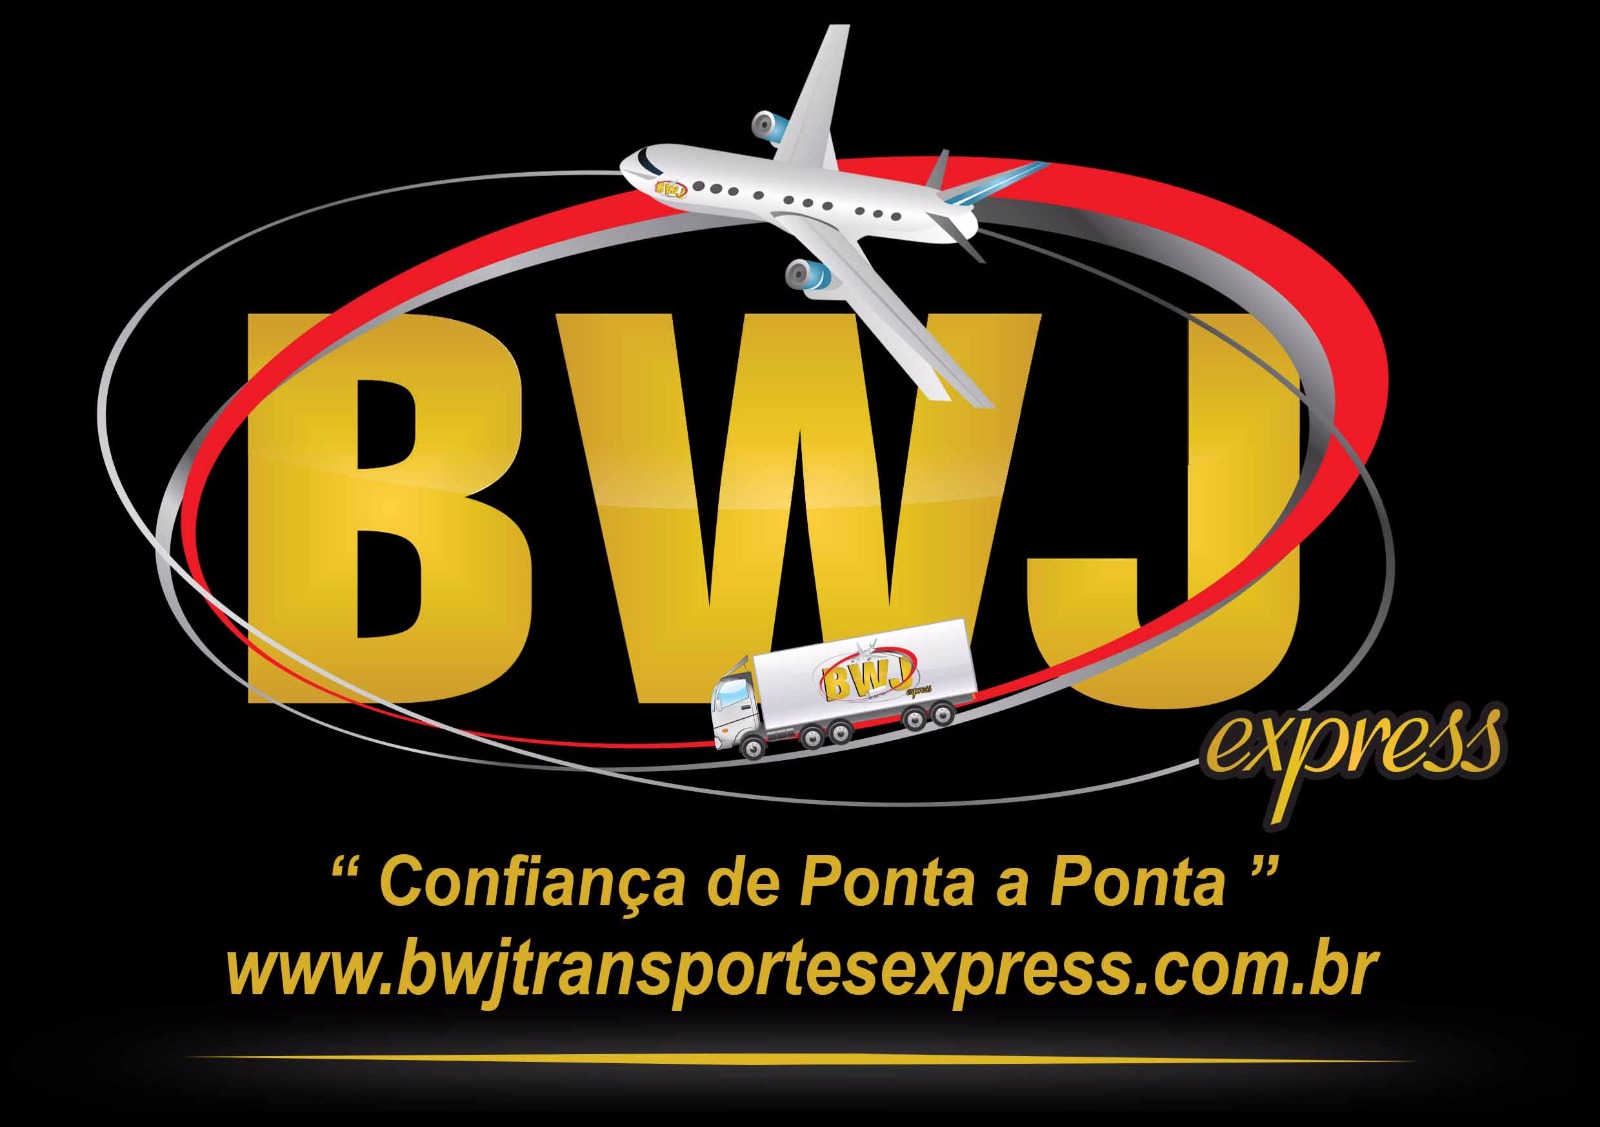 BWJ Transportes Express Ltda, confiança de ponta a ponta.